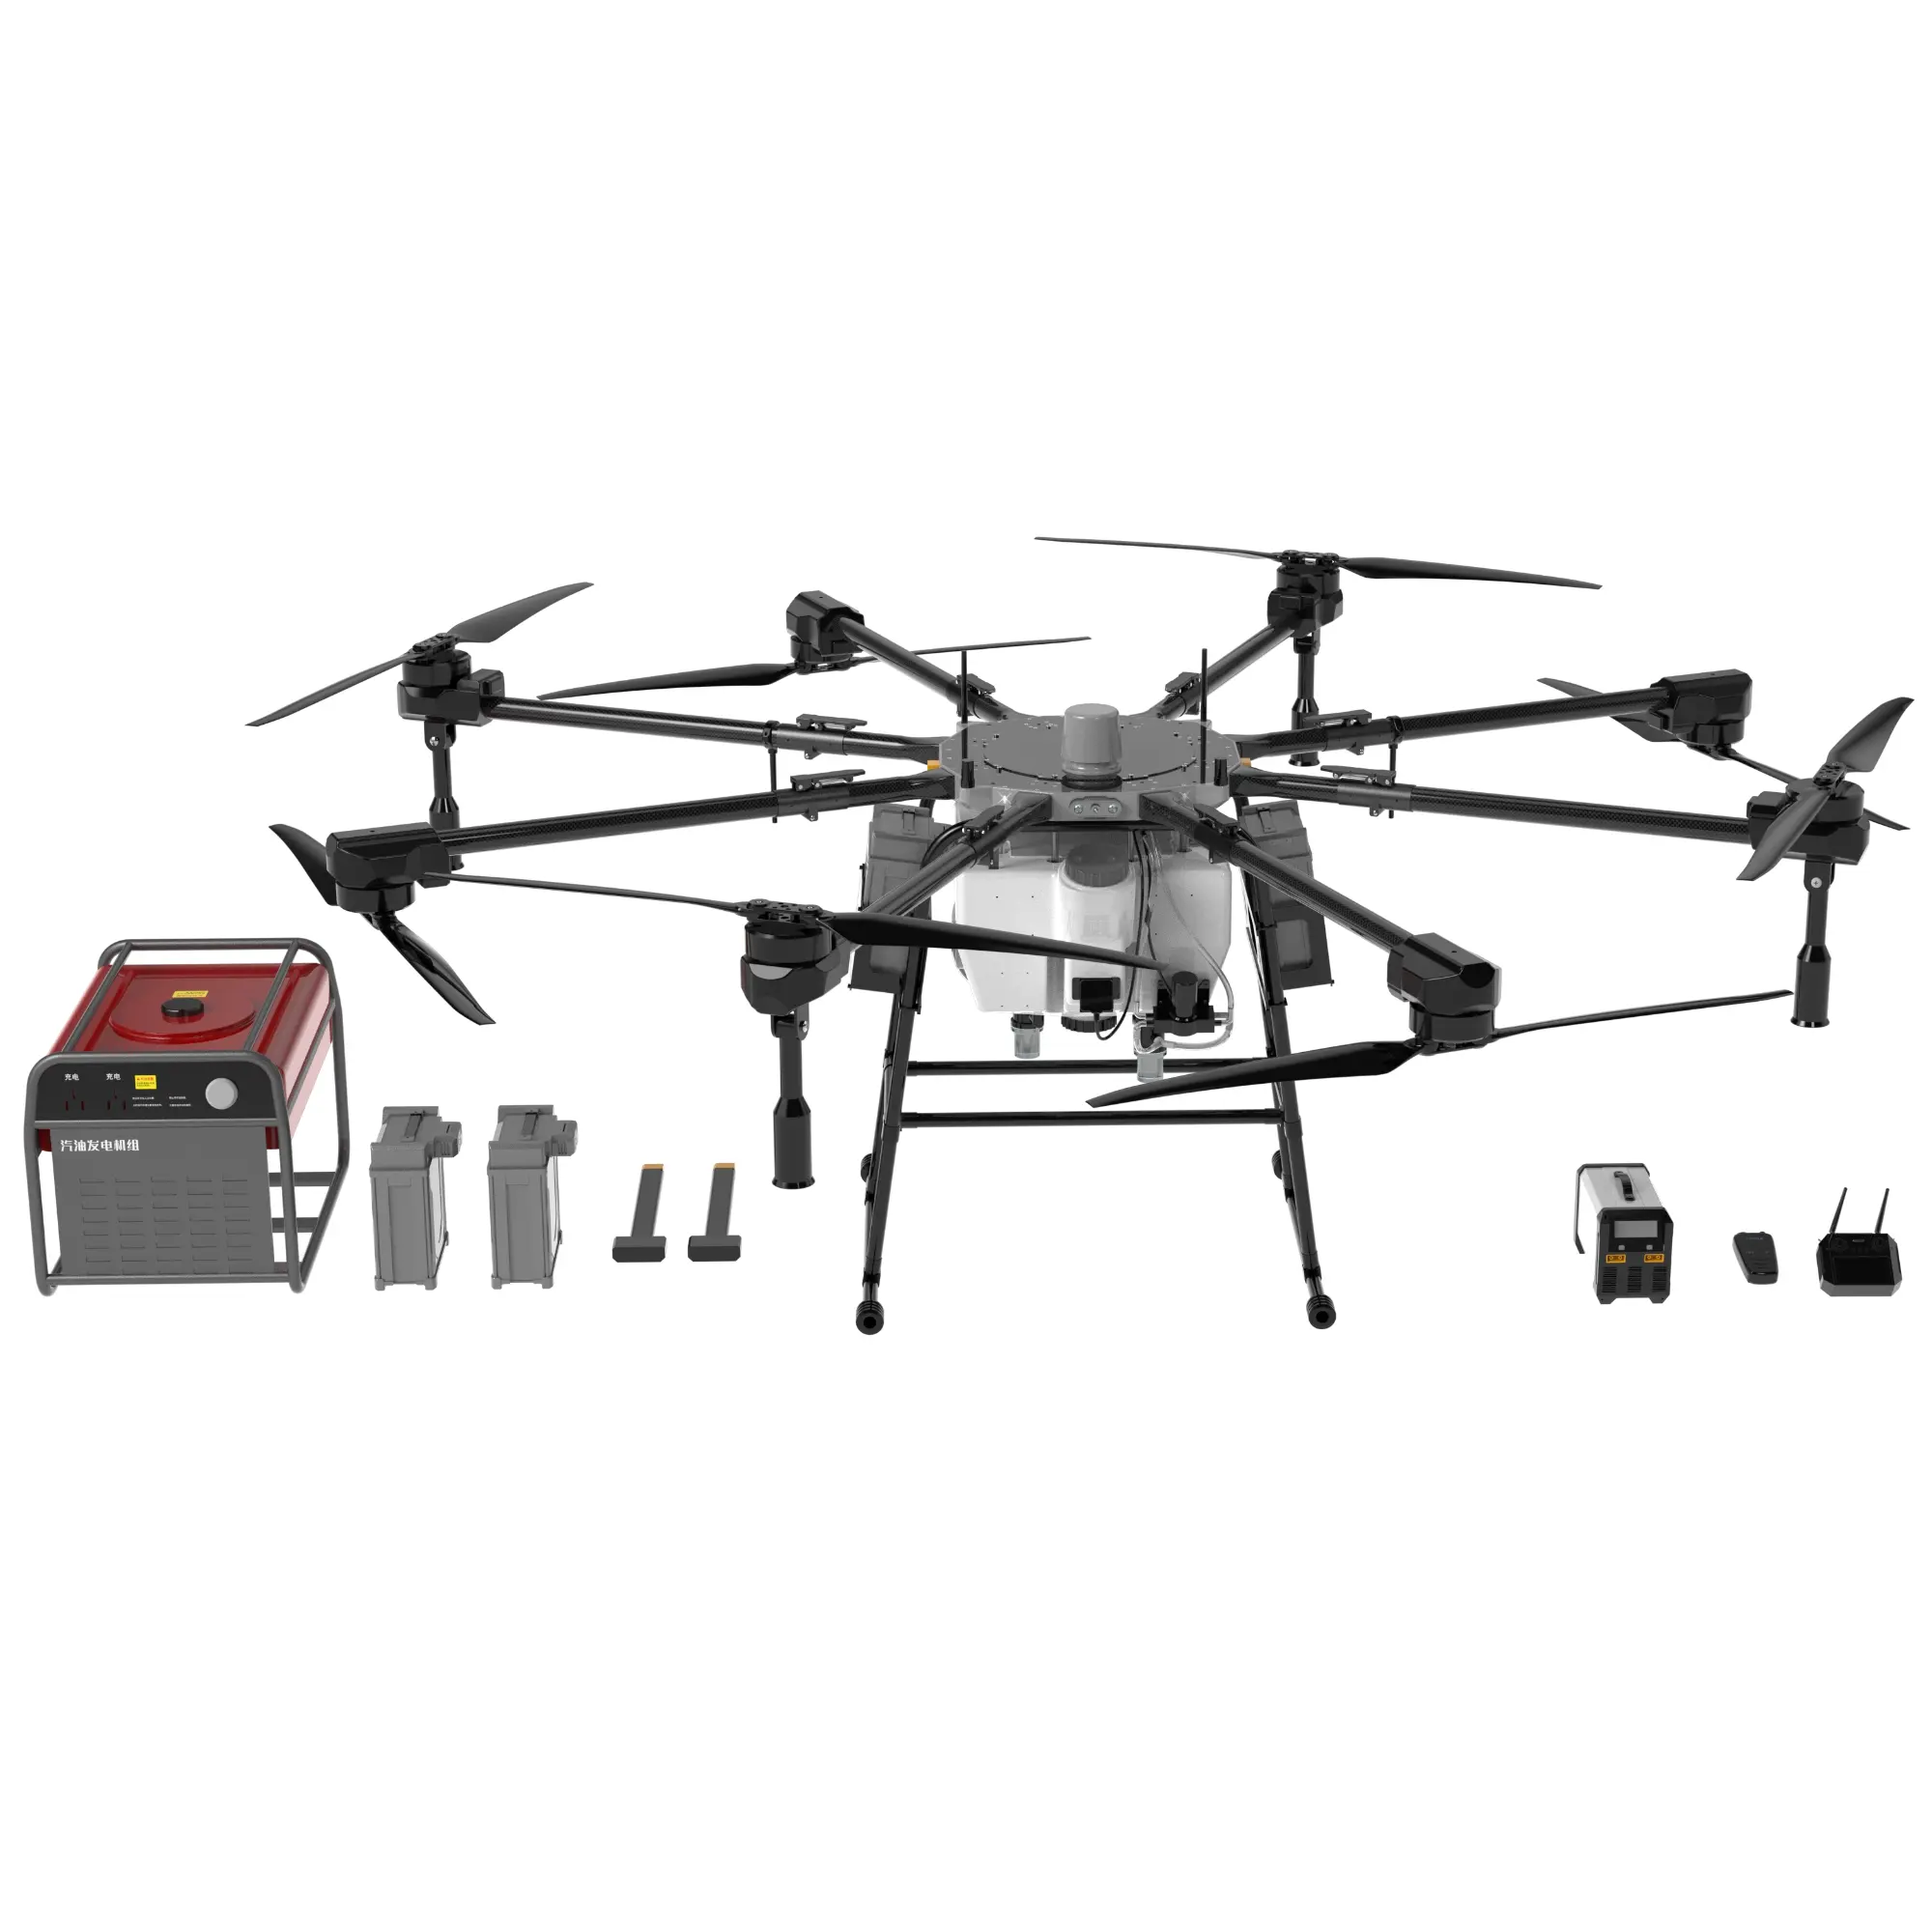 Dron de carga pesada H200 Agricultura/Dron de pulverización de pesticidas Ventas directas por fábrica